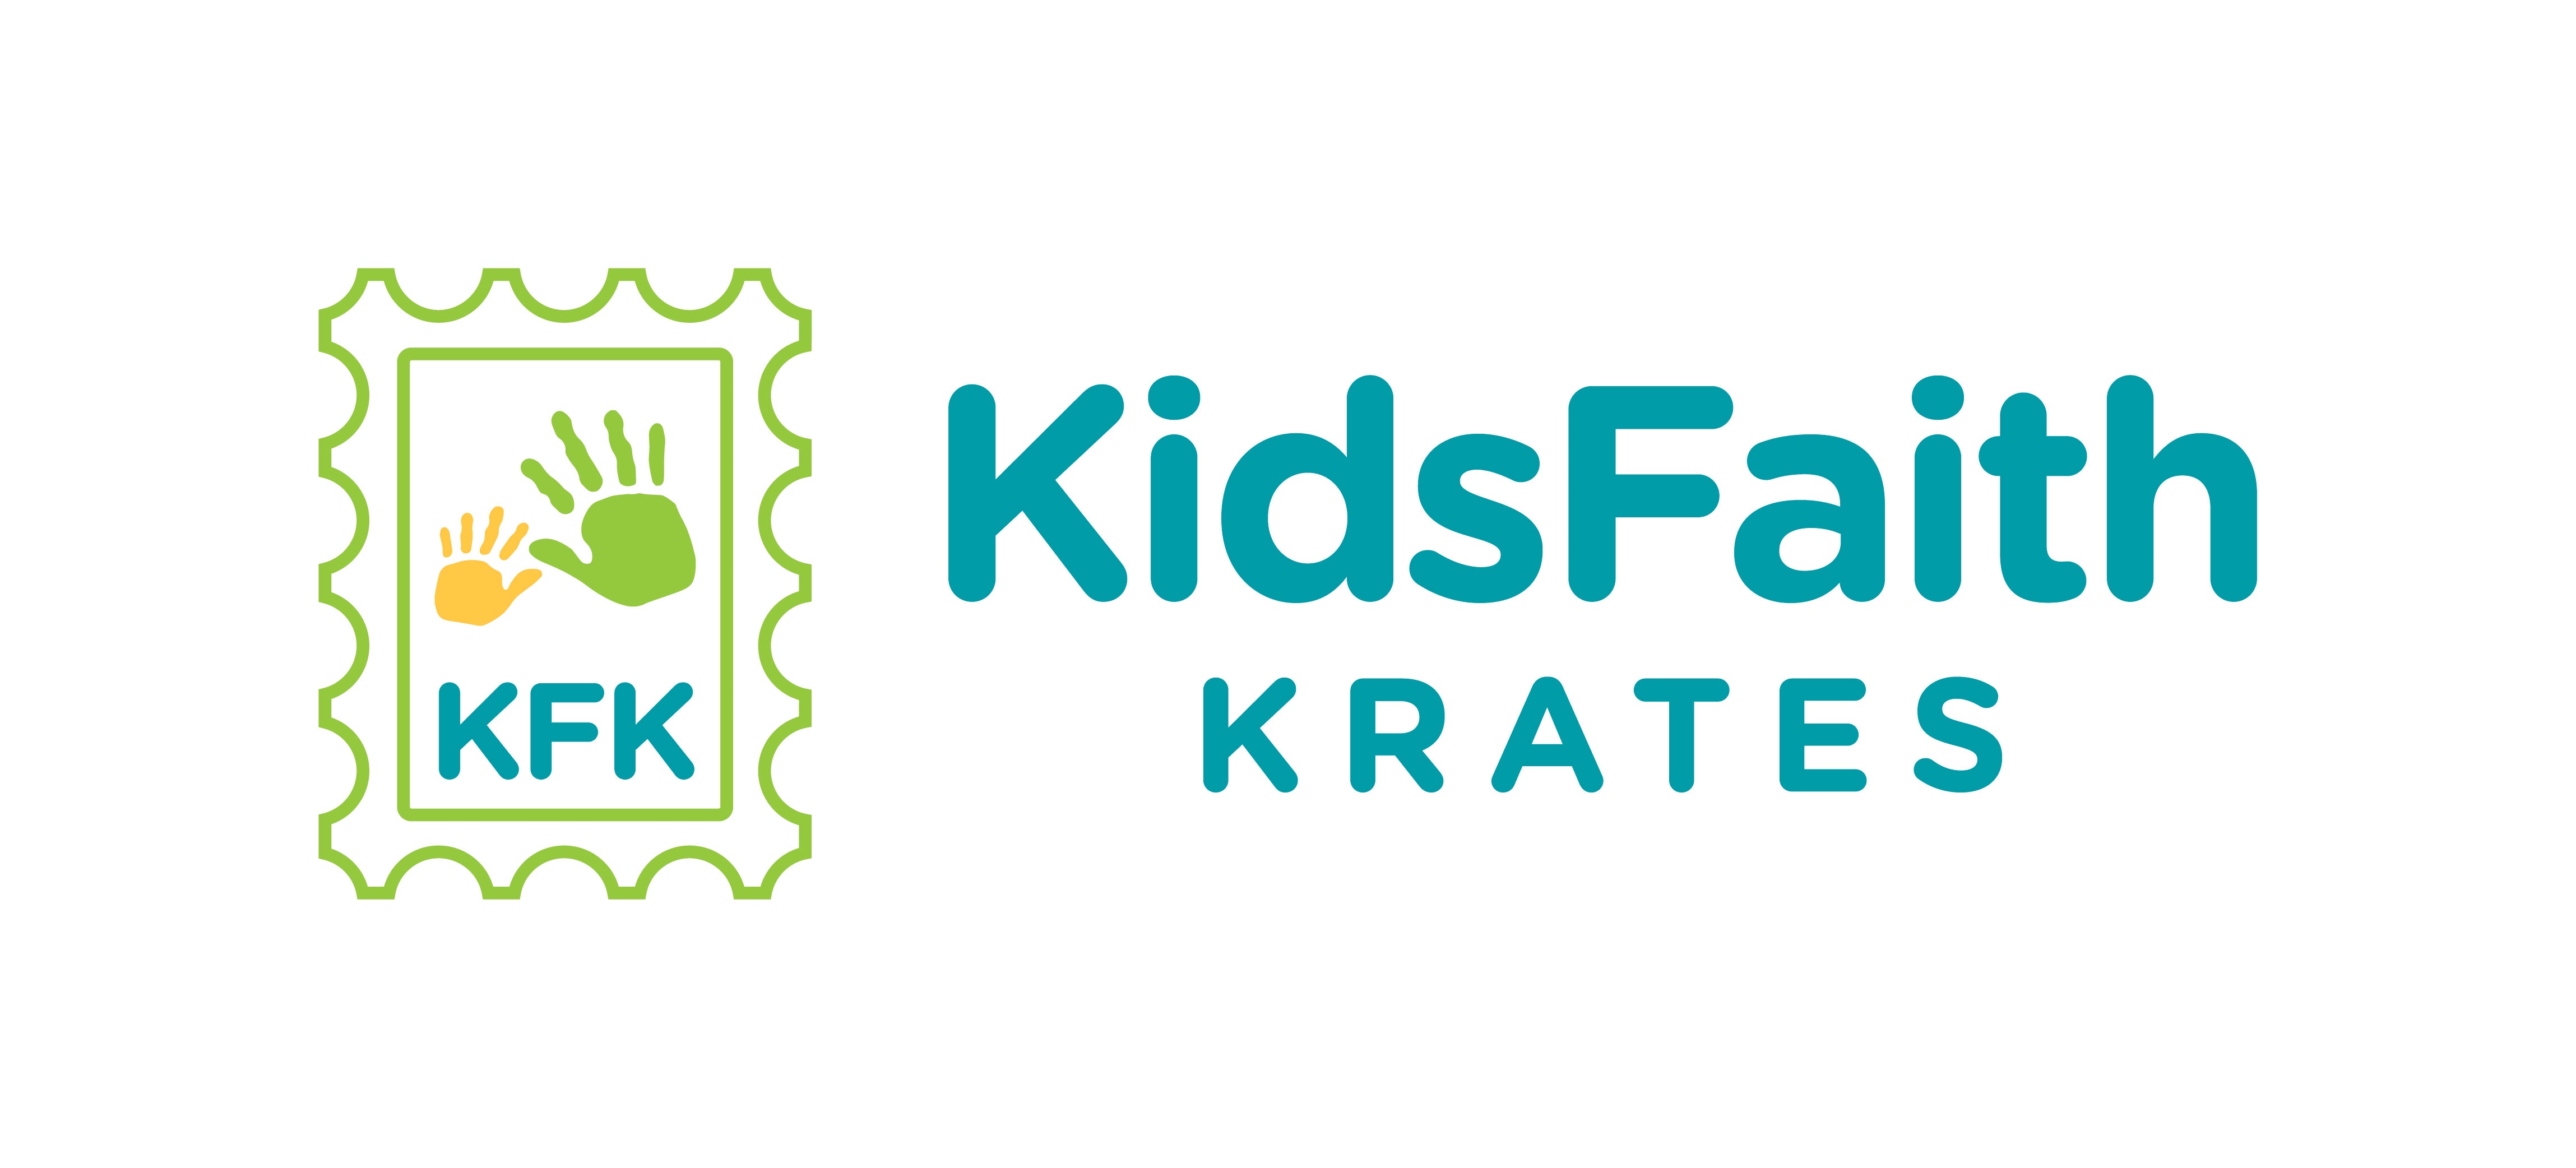 Kids Faith Krate